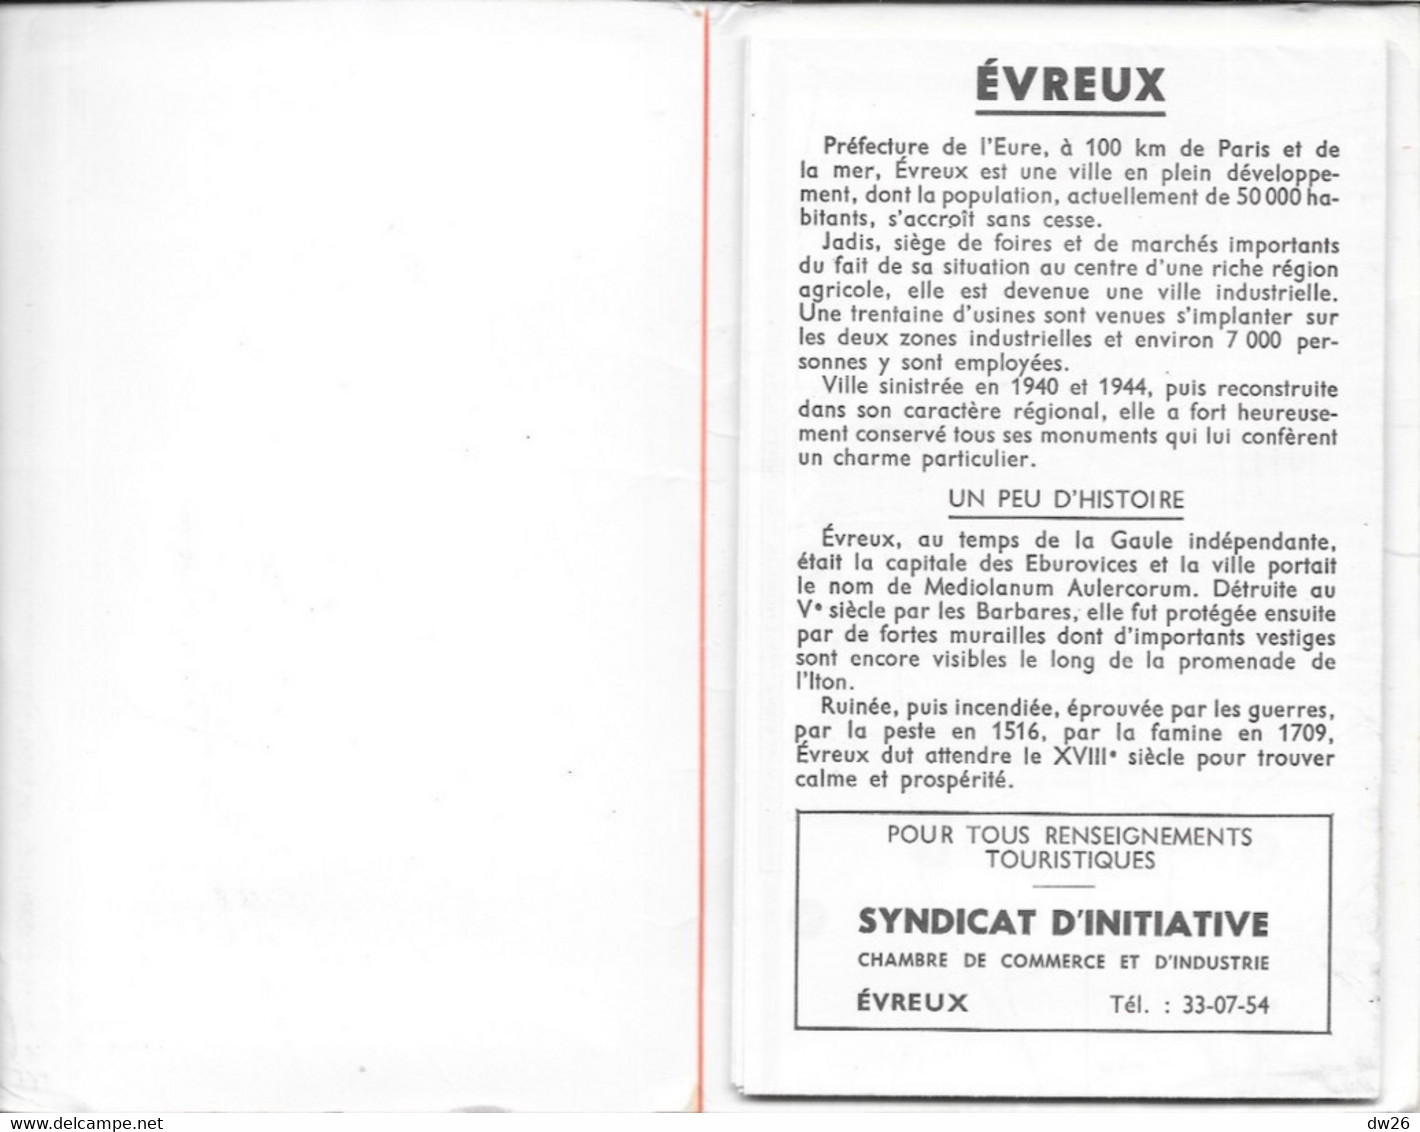 Plan Guide Blay: Evreux (Eure), Renseignements Divers, Répertoire Des Rues - Otros & Sin Clasificación